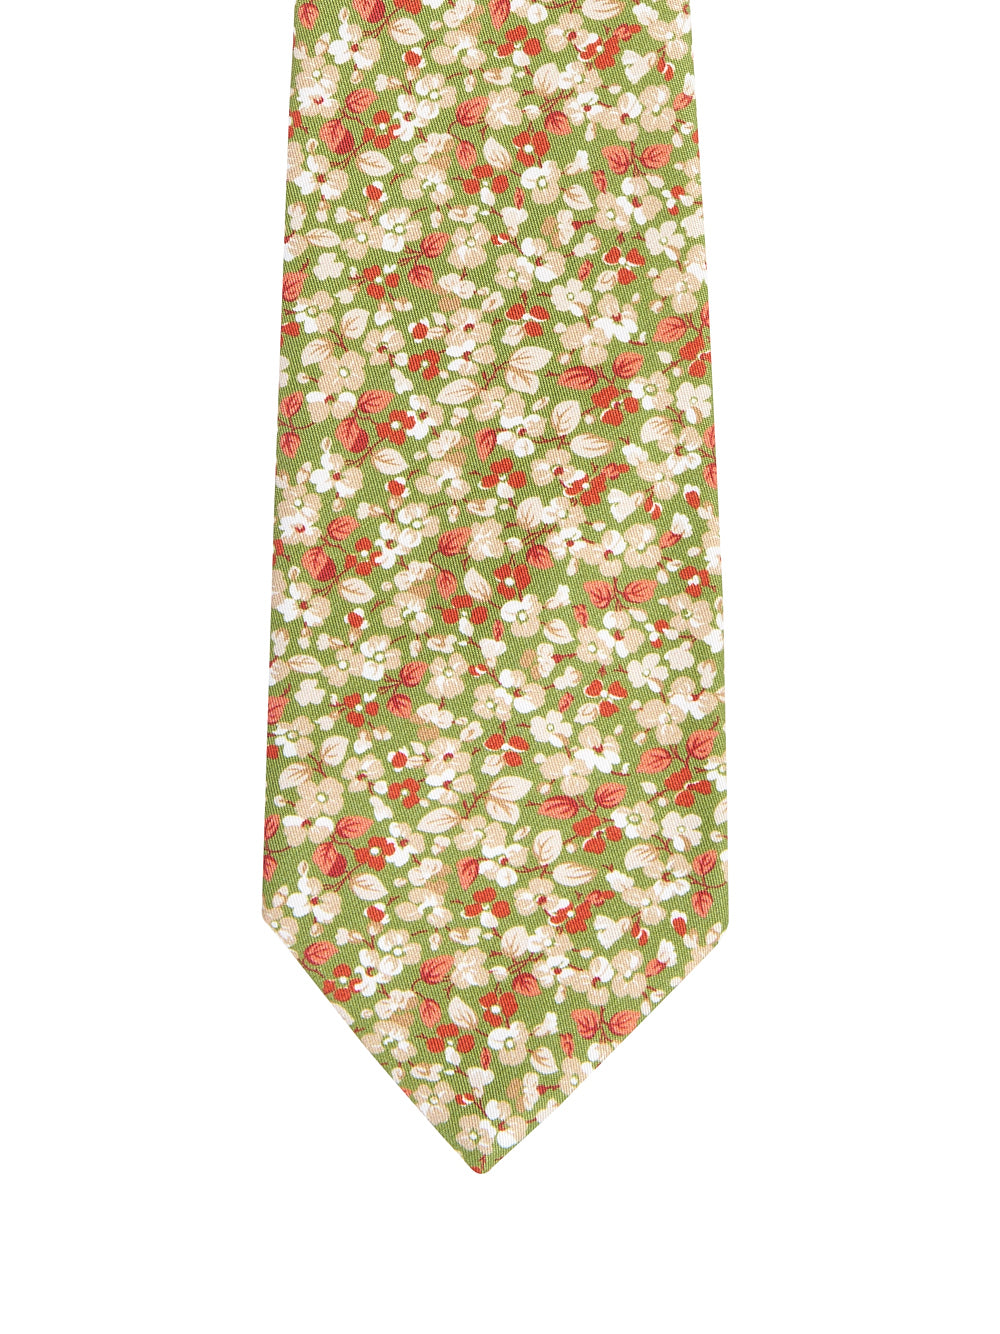 Cravatta PETRONIUS Fiore
Verde/ruggine